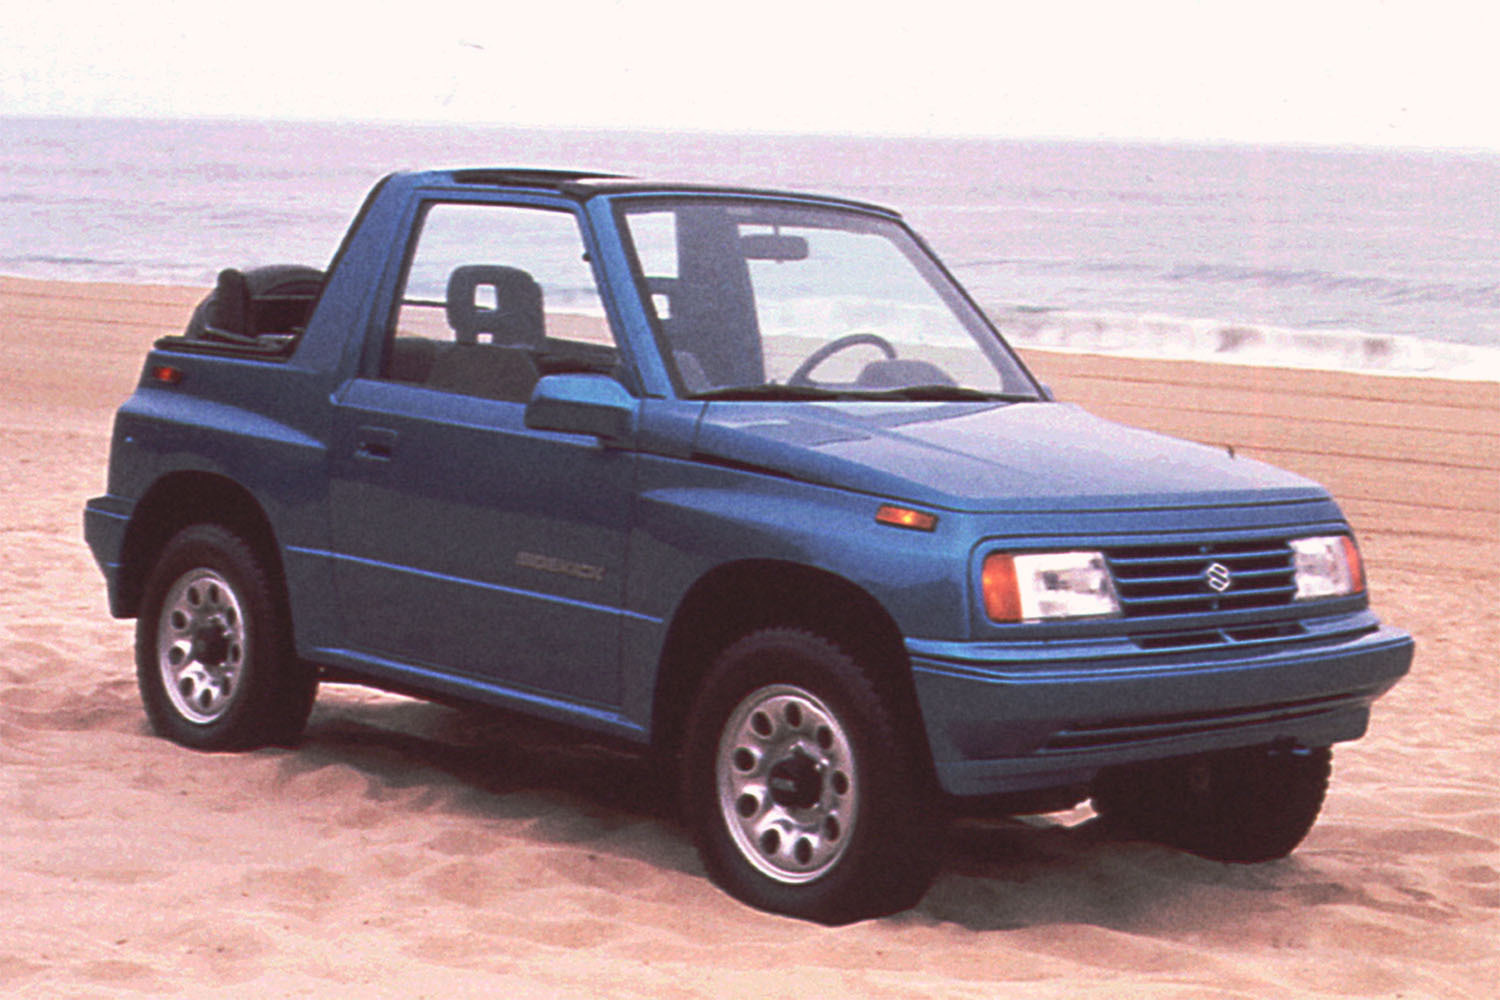 The Suzuki Sidekick in blue on the beach